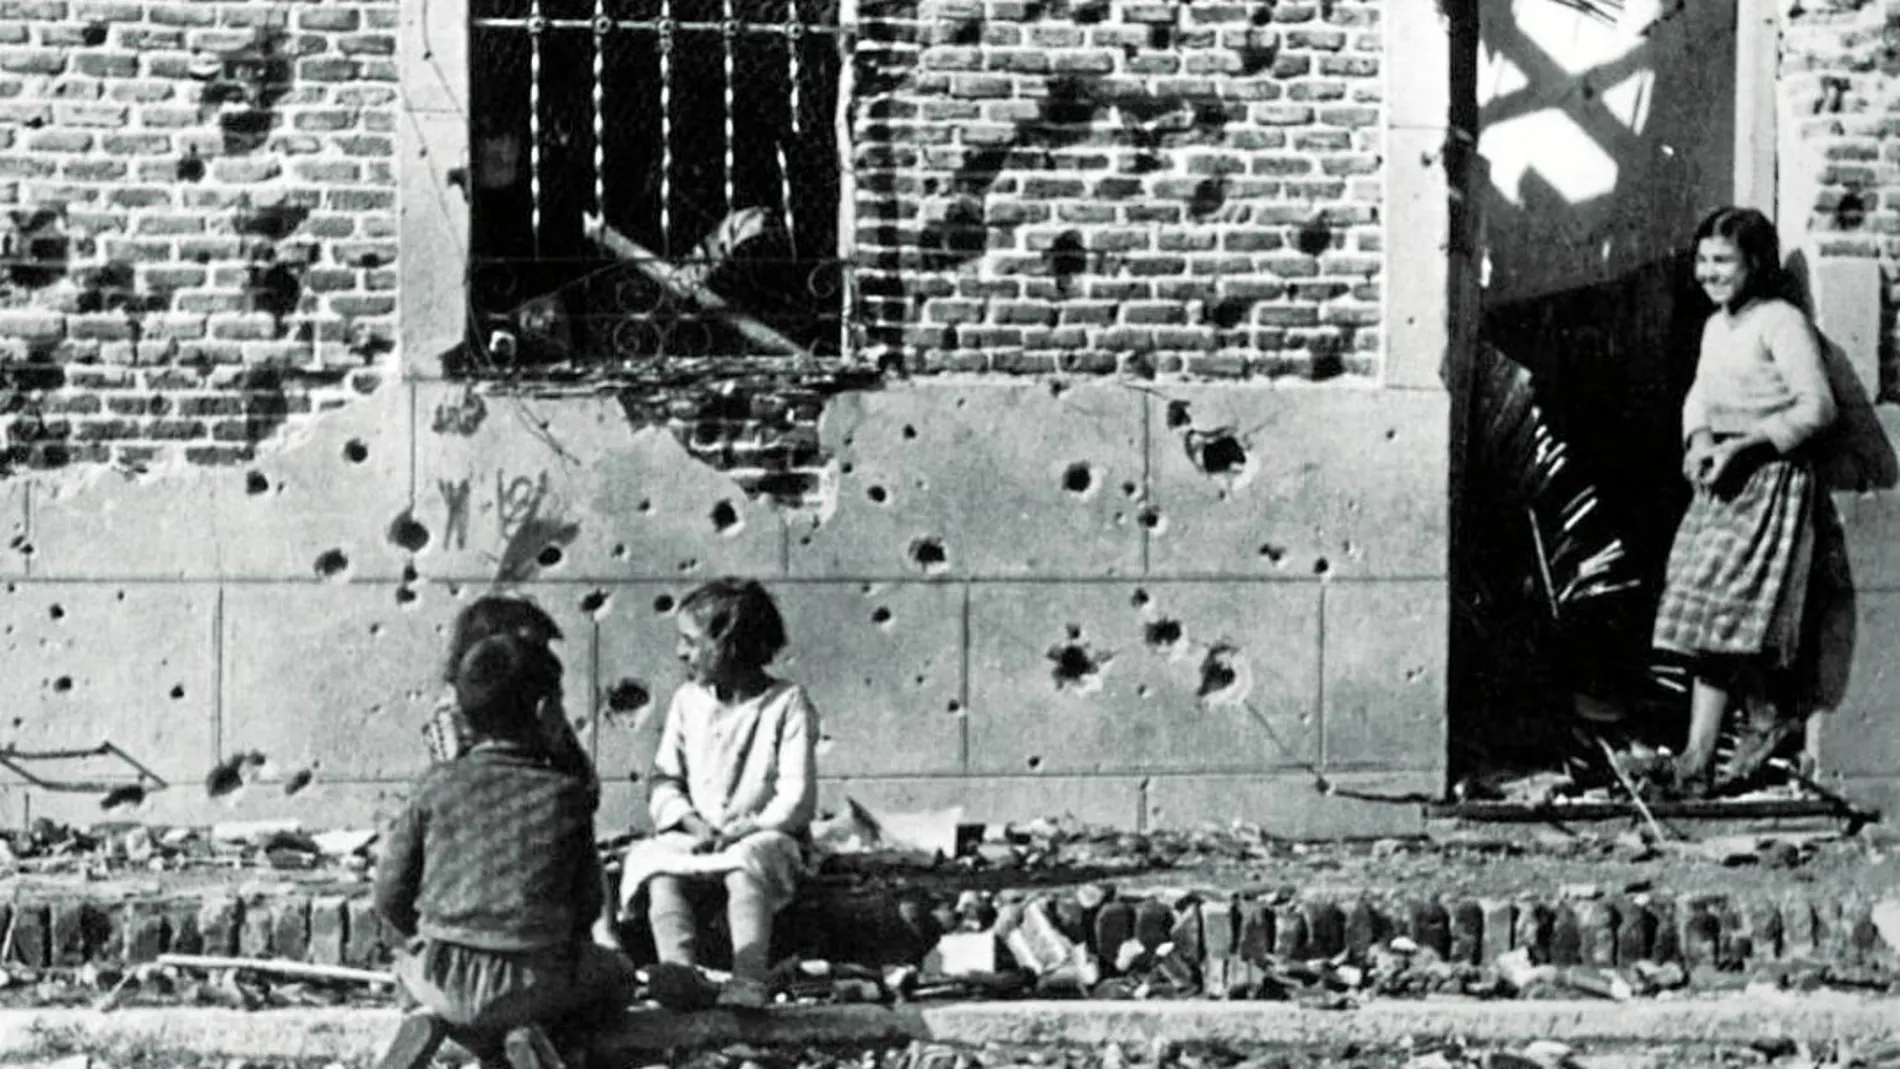 Fotografía de Robert Capa de la casa de la calle Peironcely 10 en la que se observan los restos de metralla en la fachada